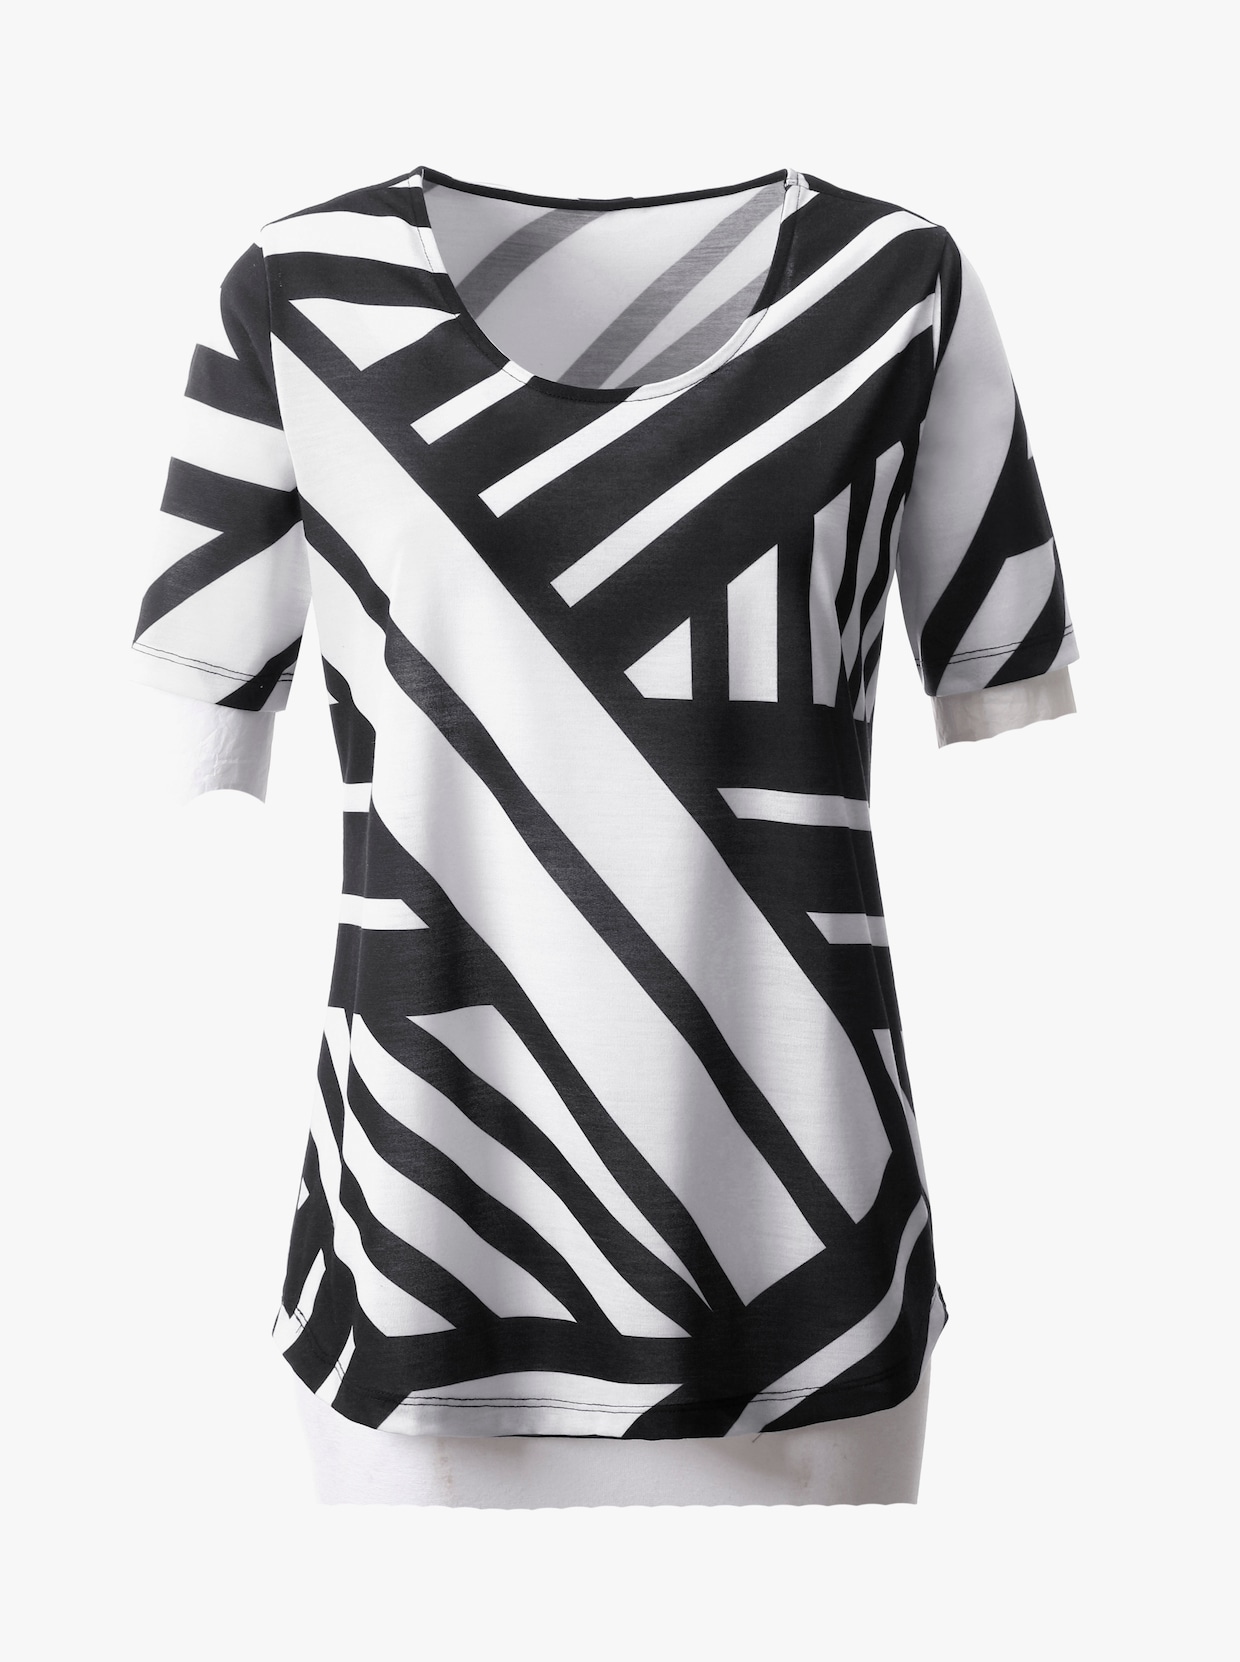 Tričko s krátkým rukávem - černá-bílá-vzor